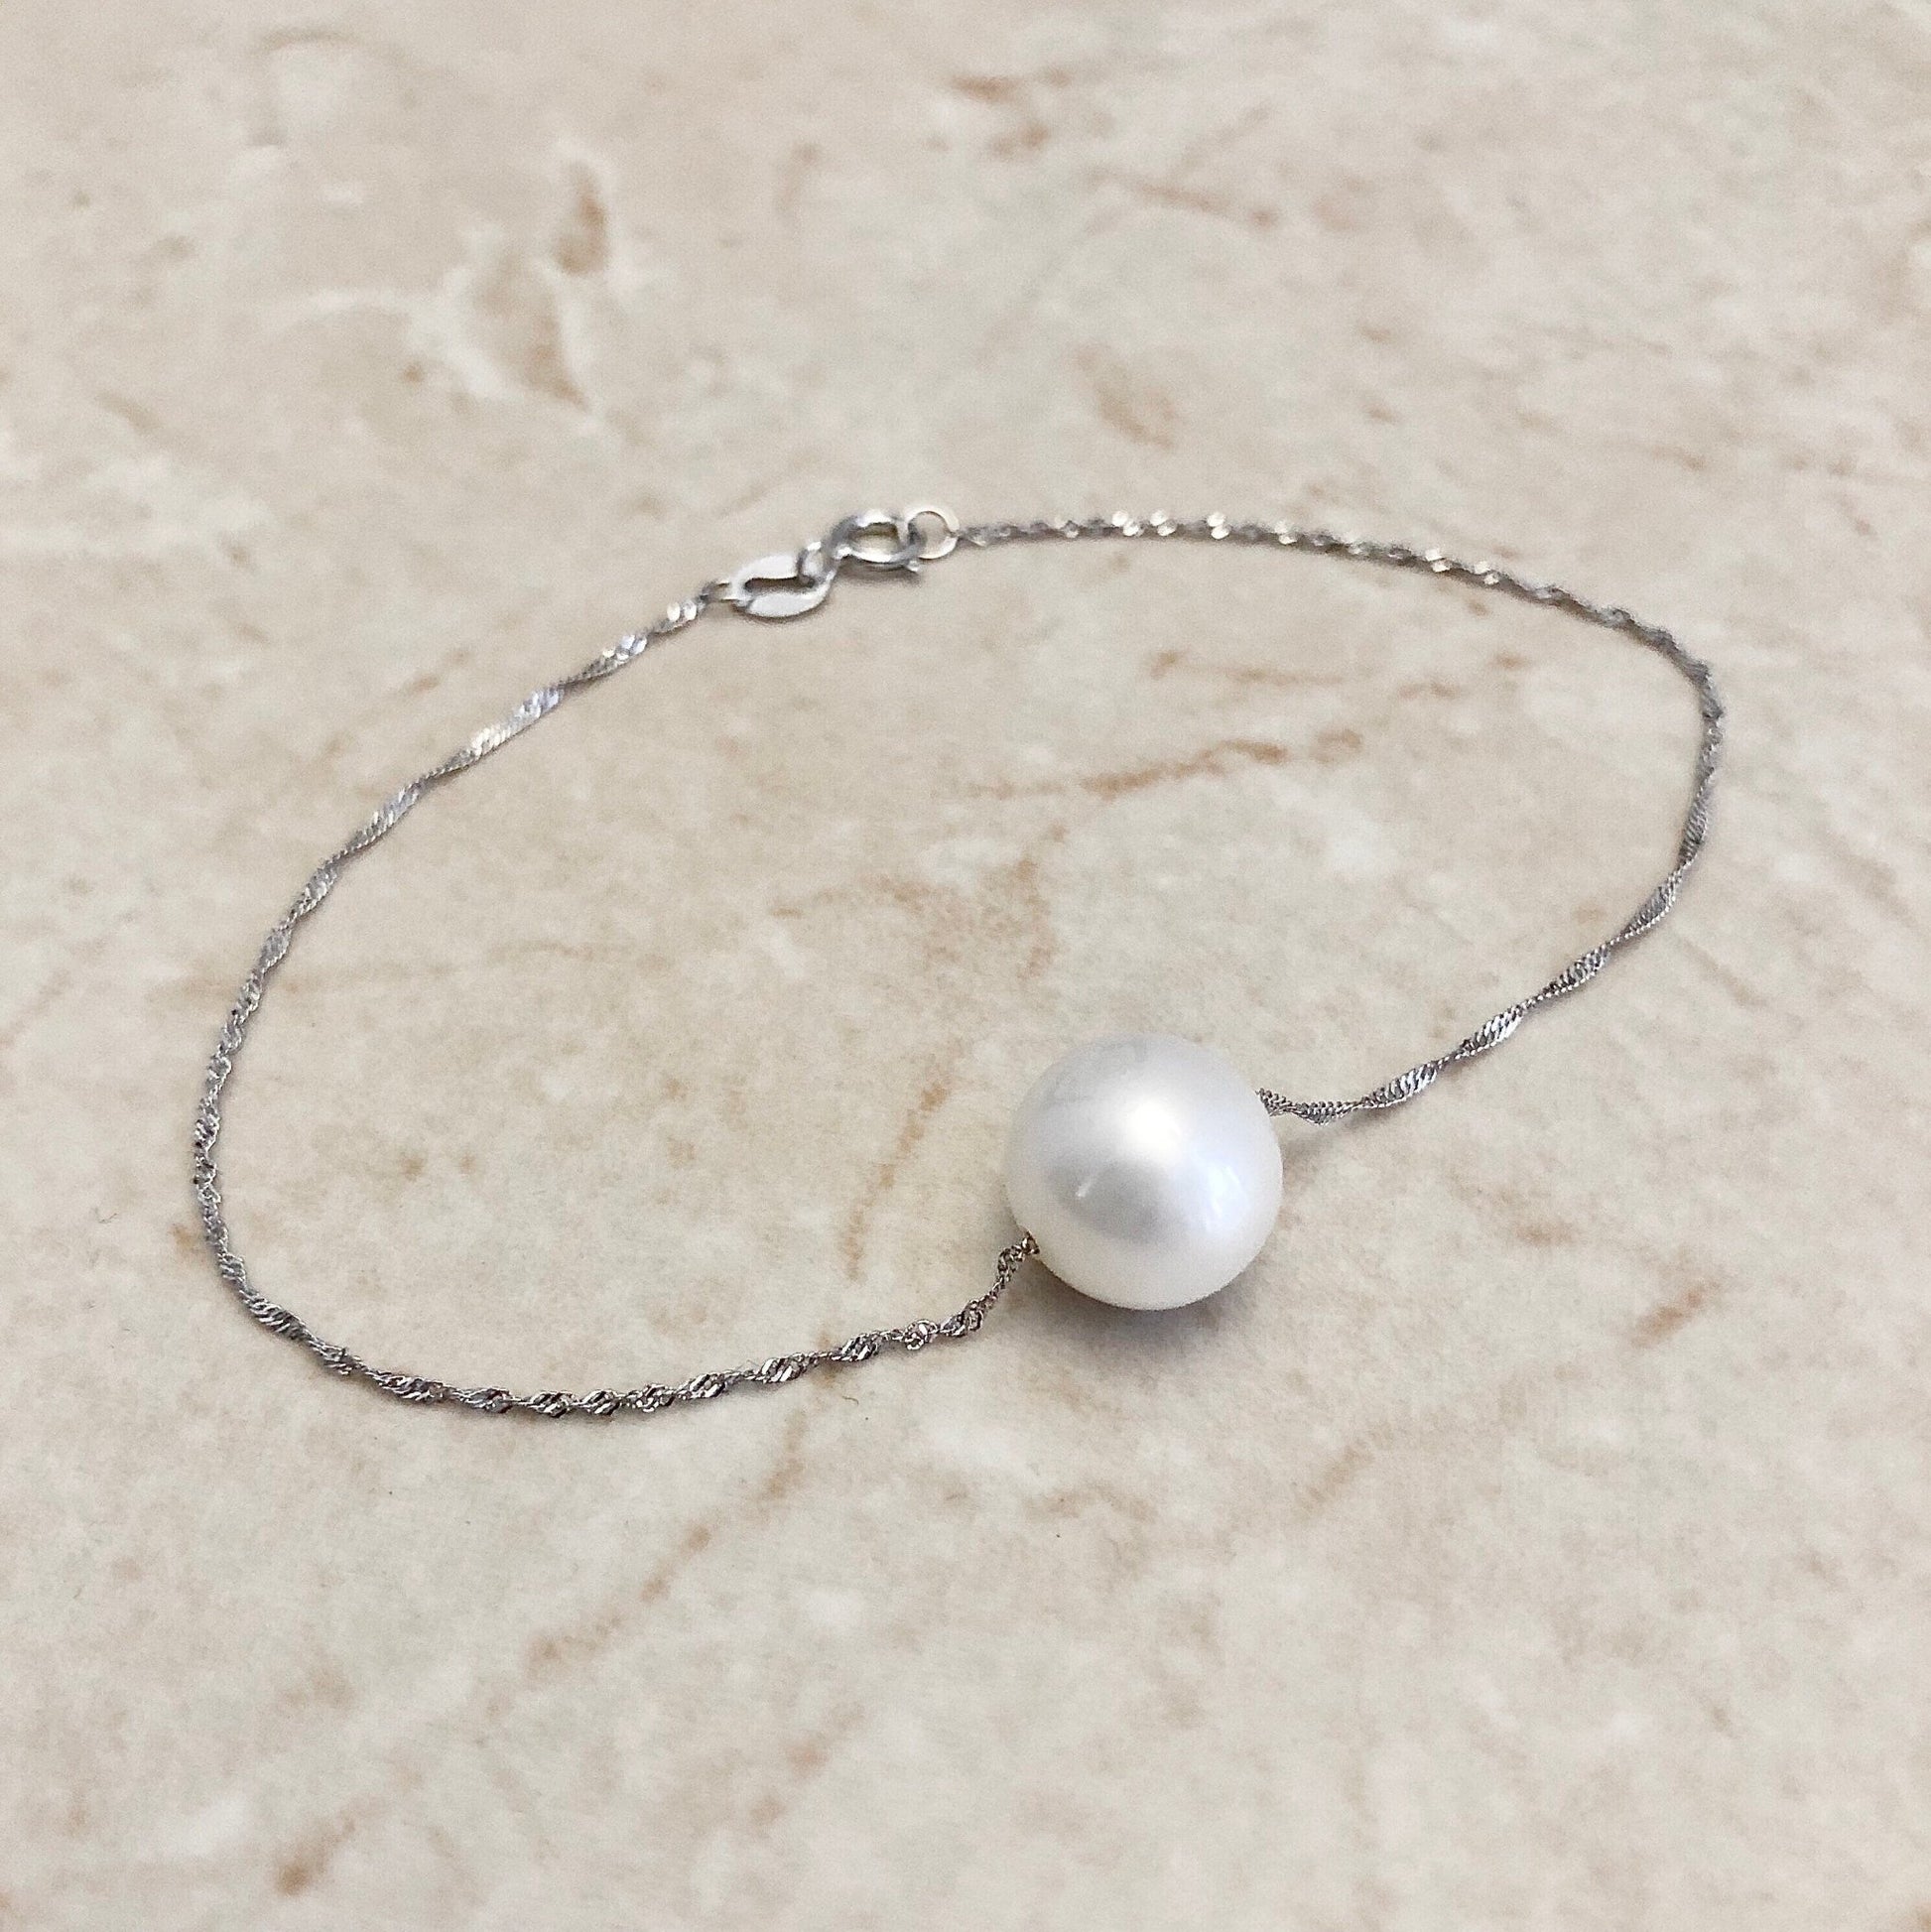 14K White Gold White Pearl Bracelet - Genuine Pearl Bracelet - Single Pearl Bracelet - Birthday Gift - June Birthstone - Best Gift For Her